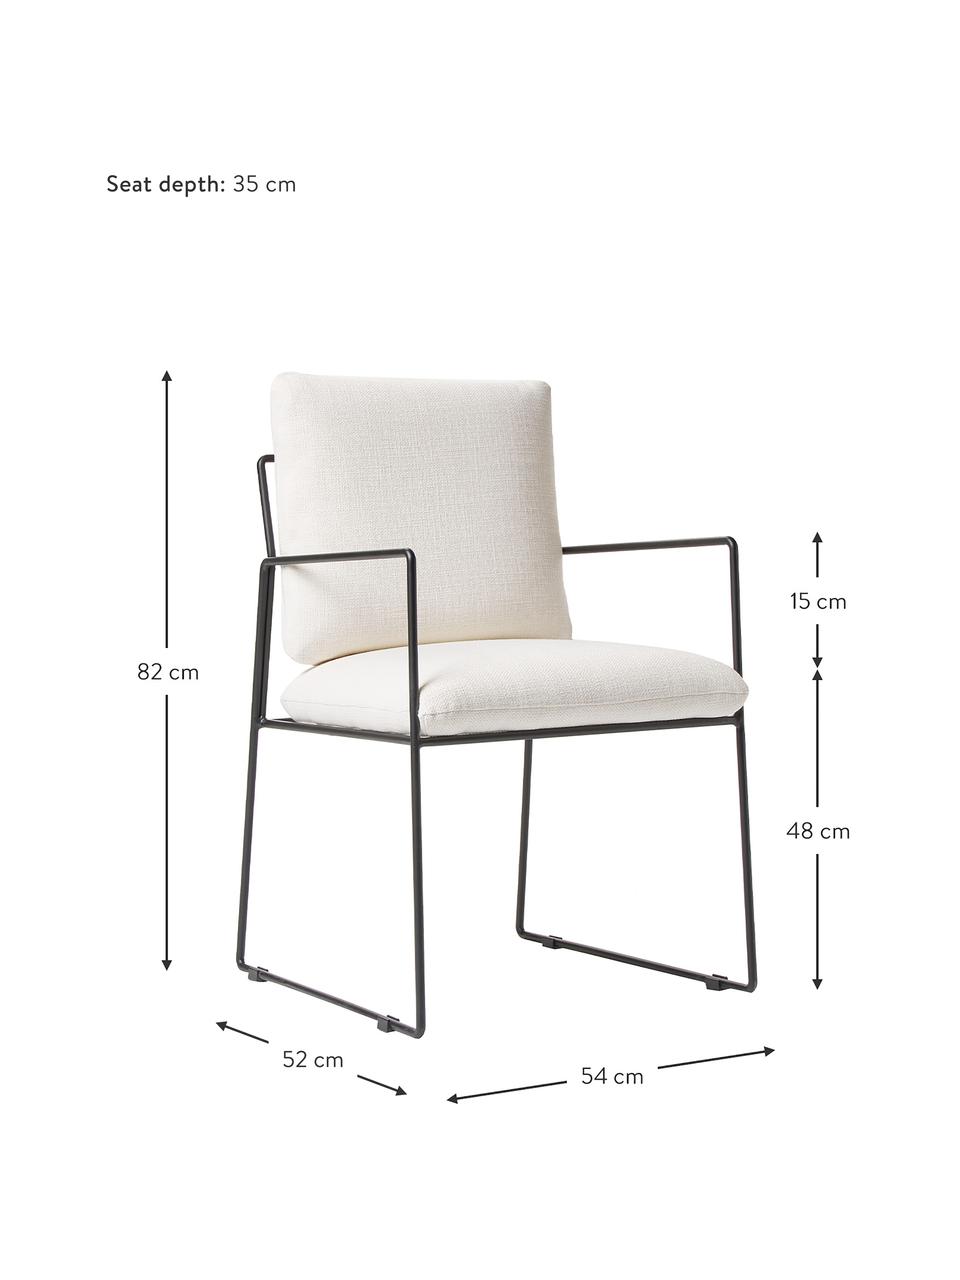 Krzesło tapicerowane z metalowym stelażem Wayne, Tapicerka: 80% poliester, 20% len Dz, Stelaż: metal malowany proszkowo, Biała tkanina, S 54 x G 52 cm